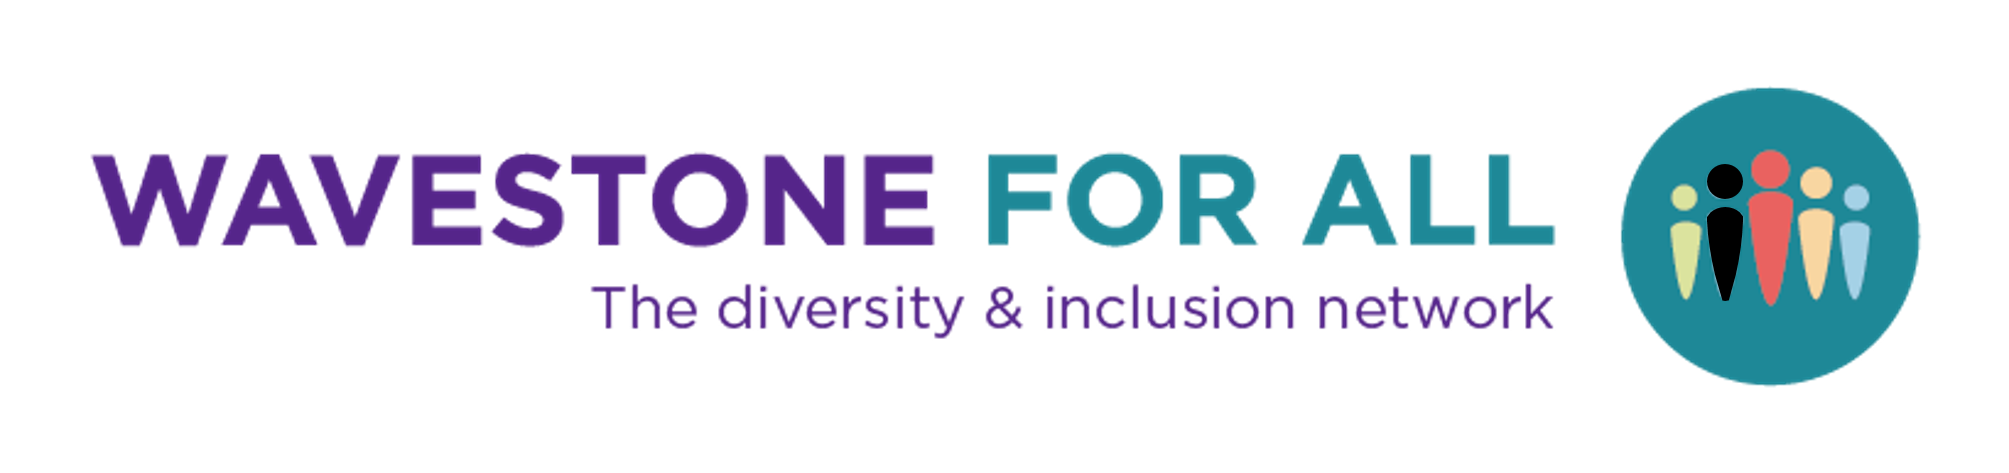 Wavestone For All, rÃ©seau diversitÃ© et inclusion